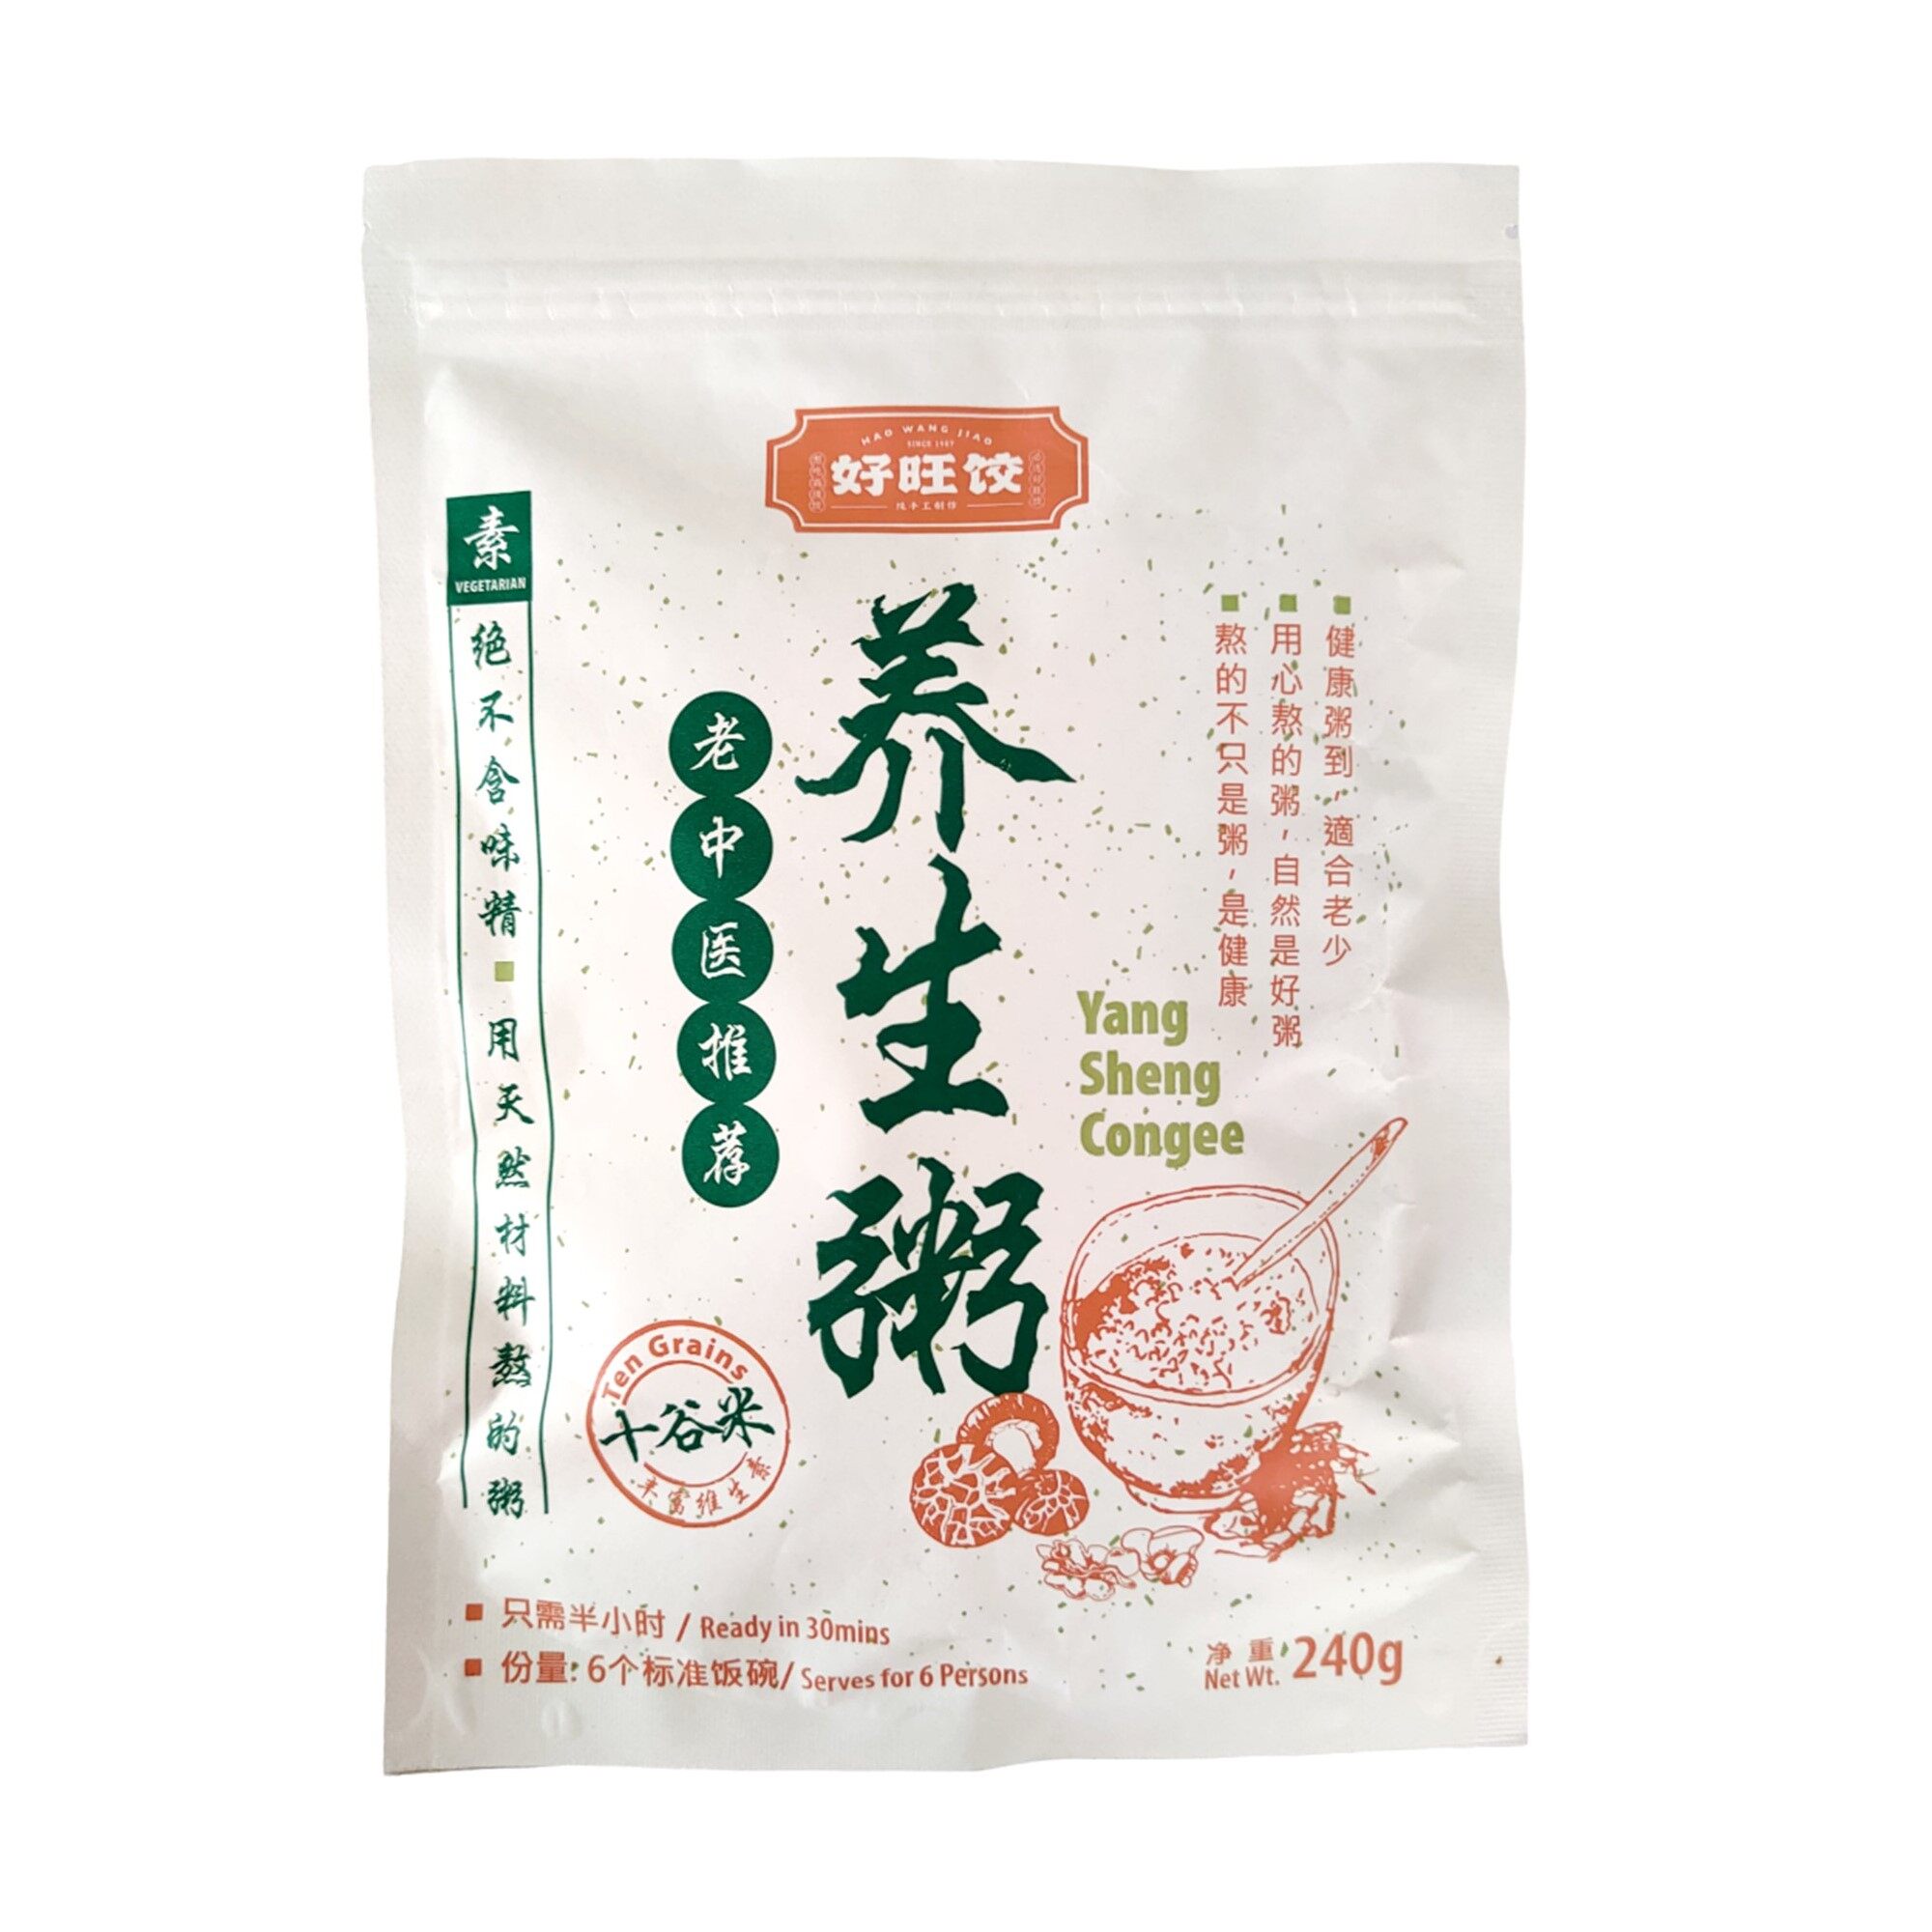 HAO WANG JIAO Yang Sheng Porridge (Ten Grains Rice) - 3packs 好旺饺十谷米养生粥 - 3packs